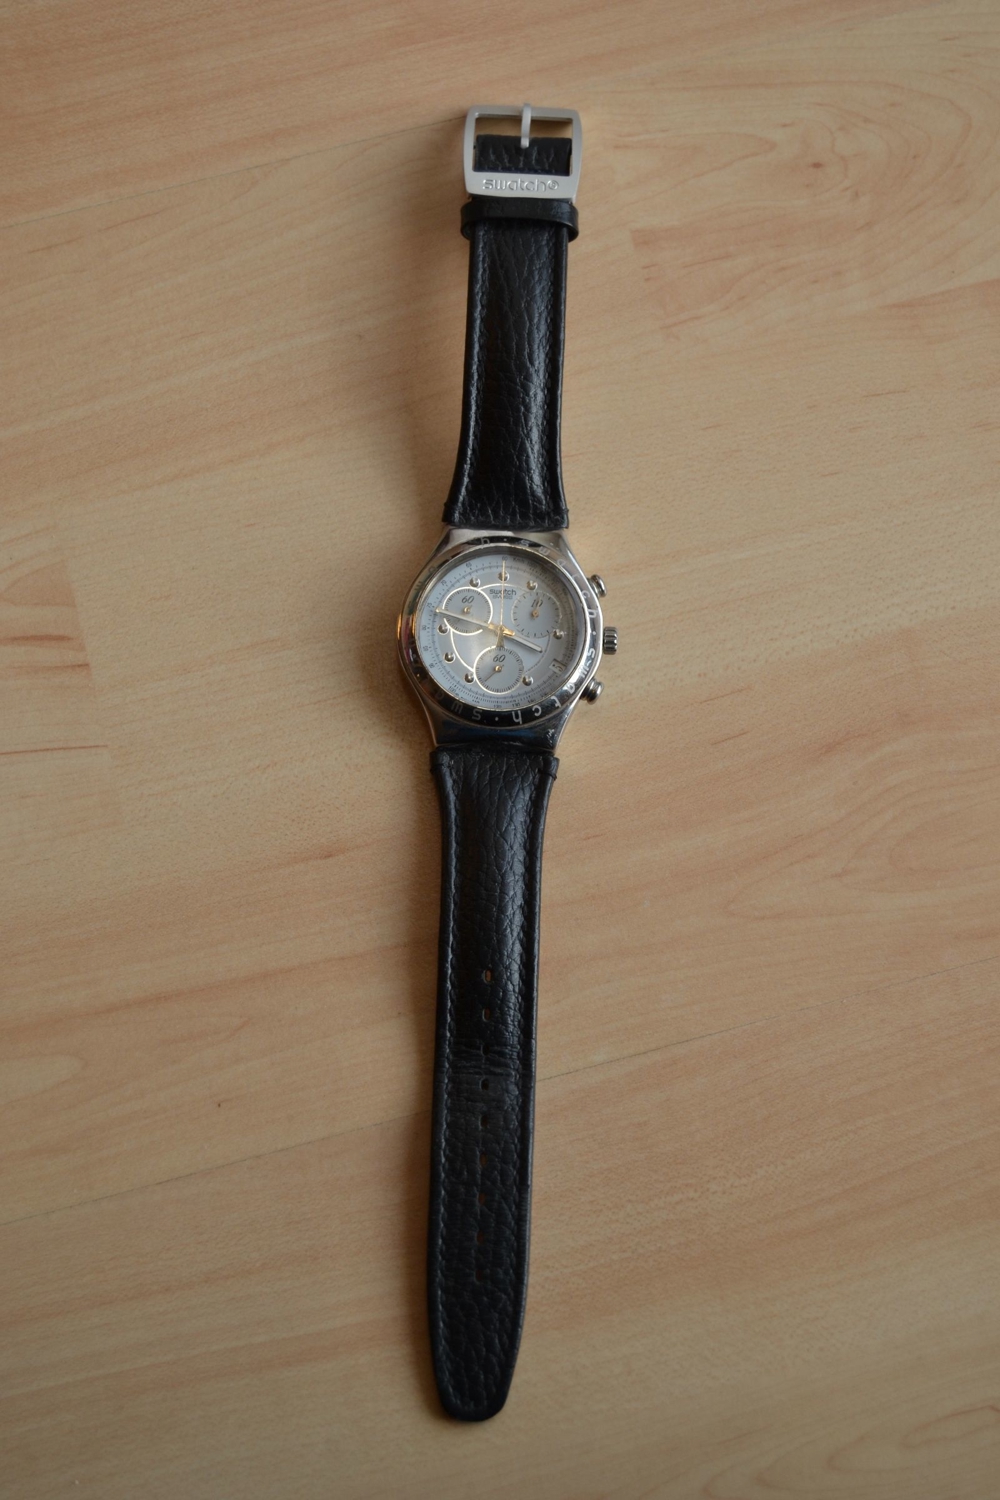 Verkaufe original Swatch Irony - Uhr für Herren, mit schwarzem Lederarmband